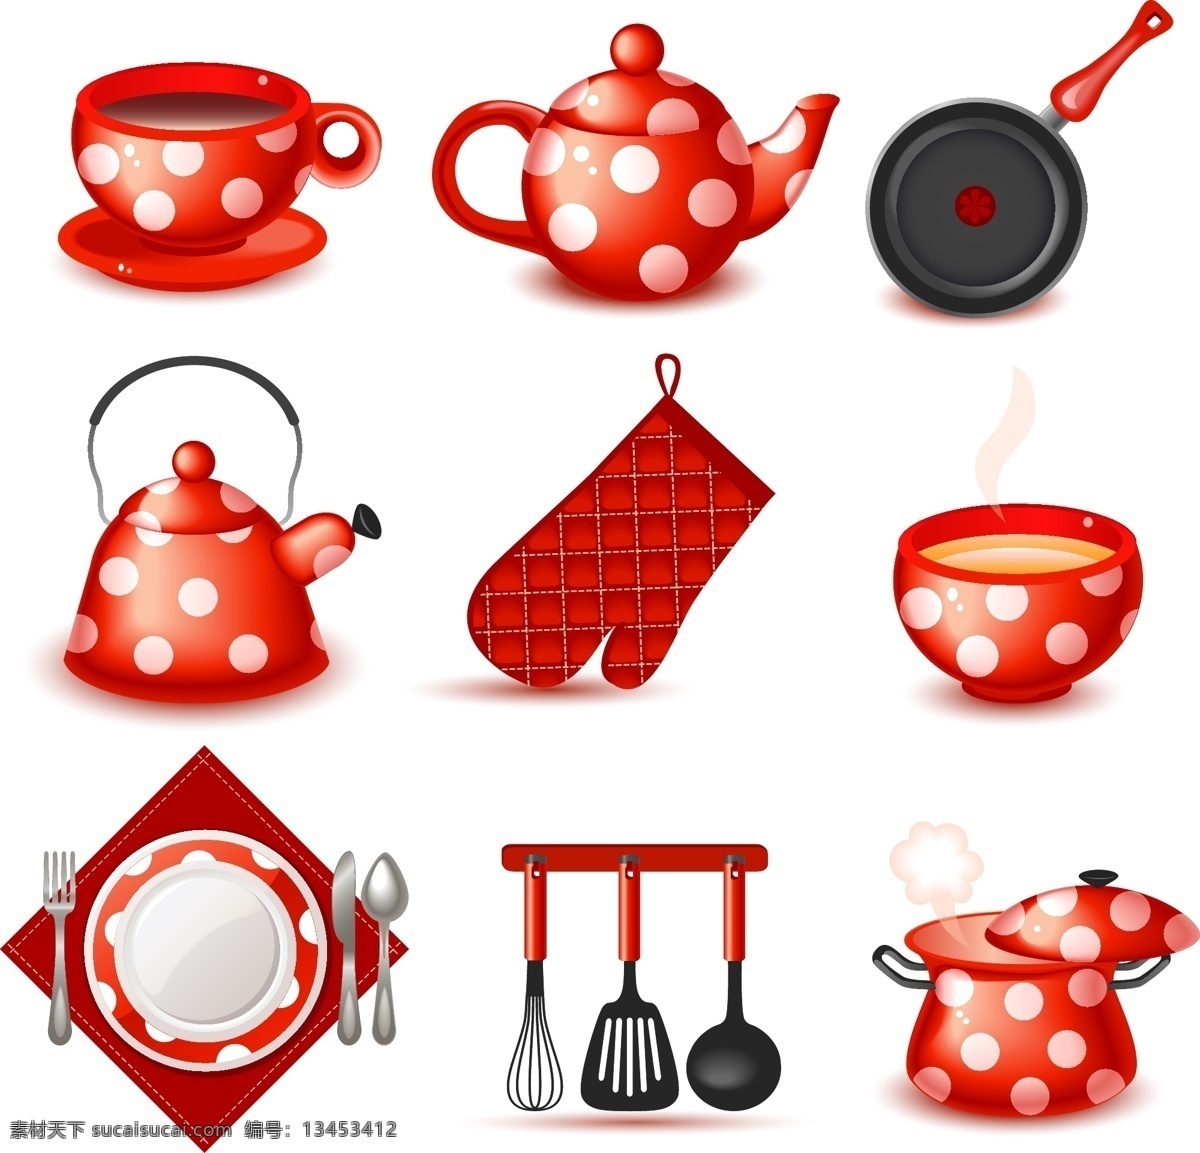 红色 餐具 图标 矢量 白色 煲汤锅 茶壶 红色圆点 平底锅 碗